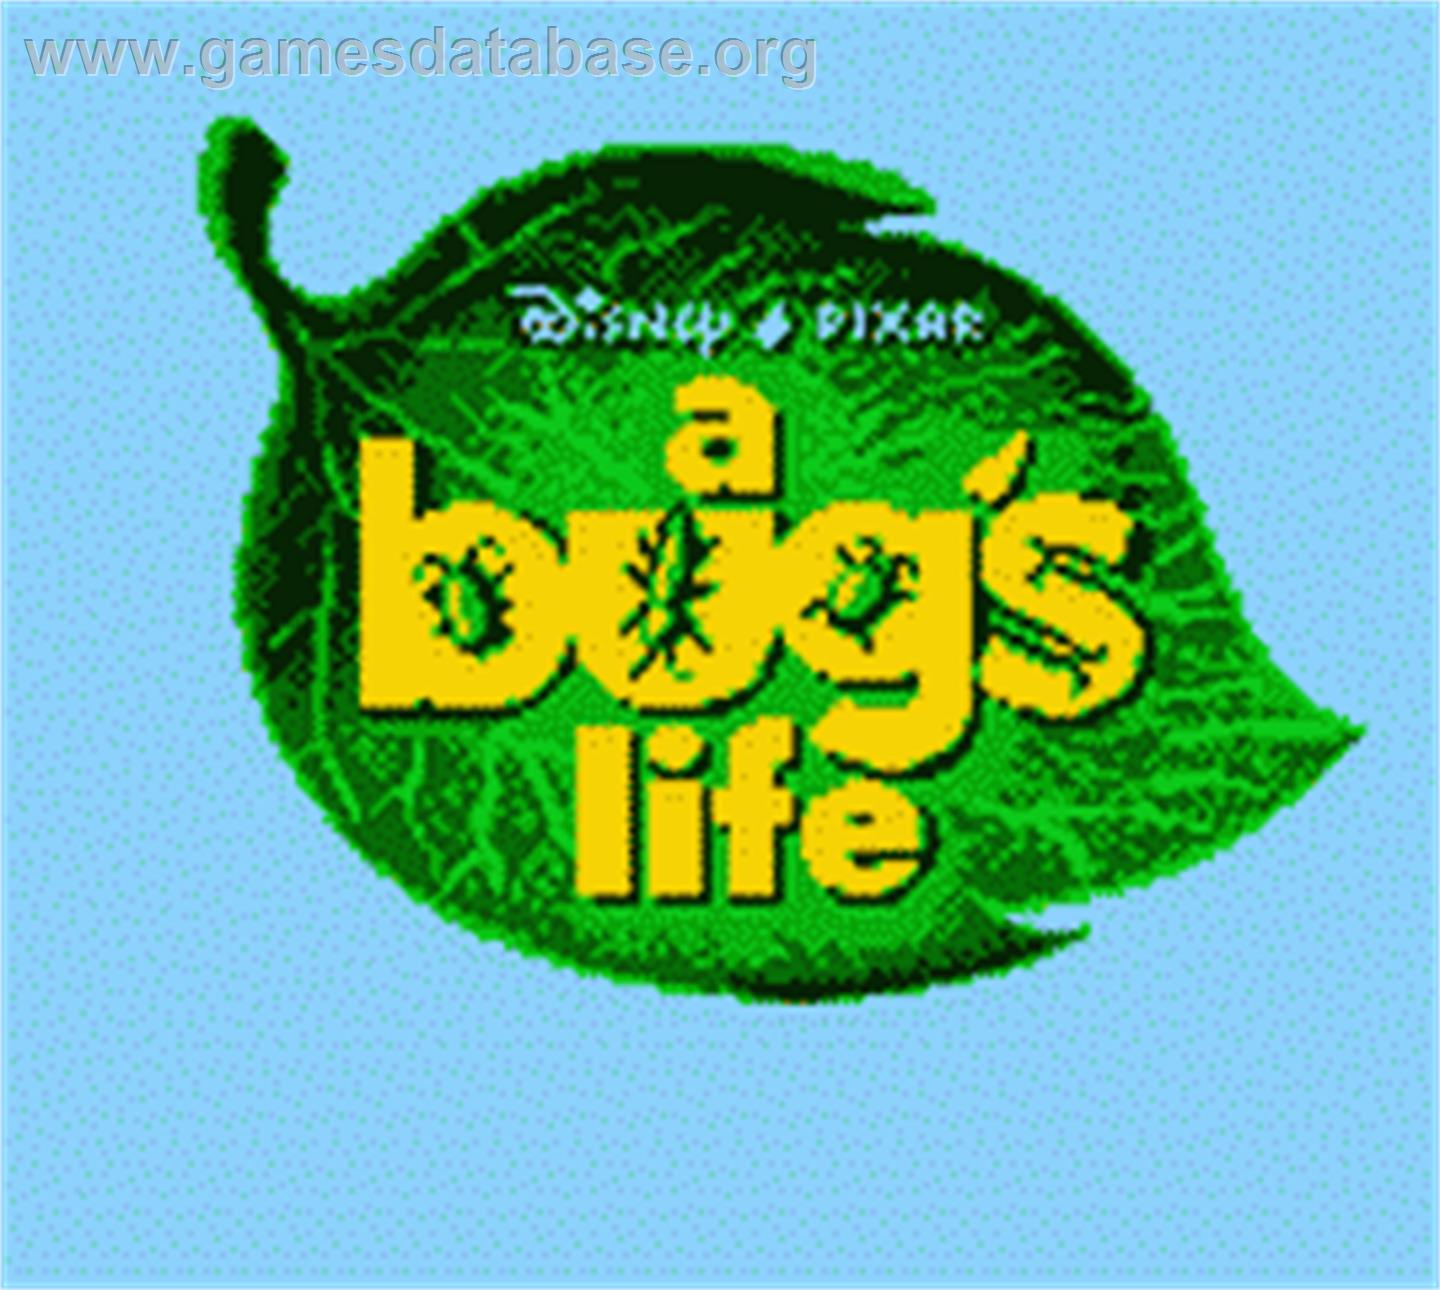 A Bug's Life - Nintendo Game Boy Color - Artwork - Title Screen